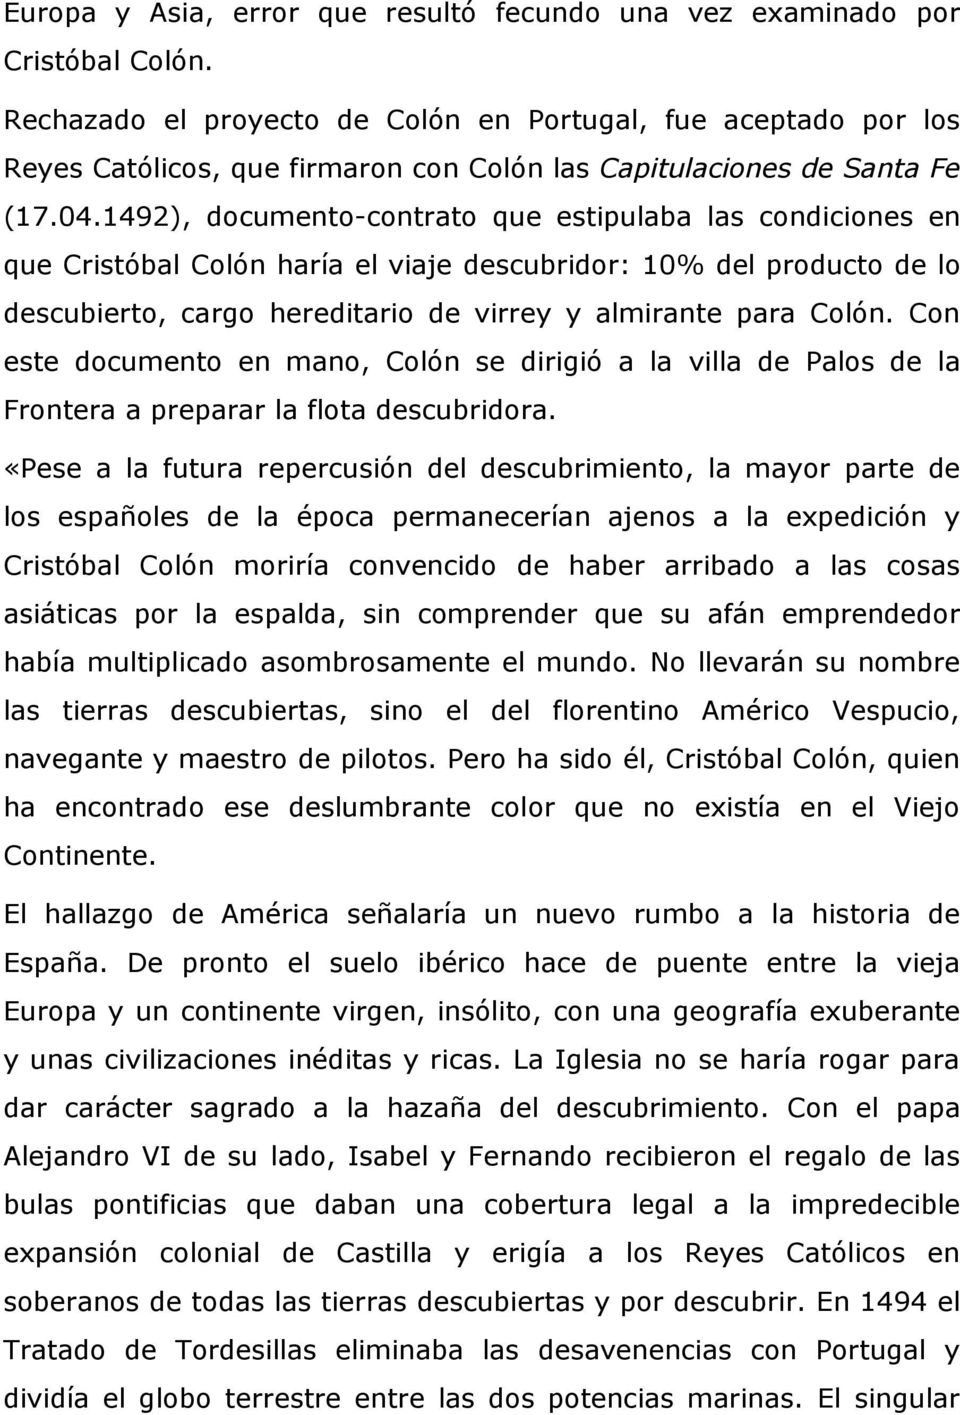 1492), documento-contrato que estipulaba las condiciones en que Cristóbal Colón haría el viaje descubridor: 10% del producto de lo descubierto, cargo hereditario de virrey y almirante para Colón.